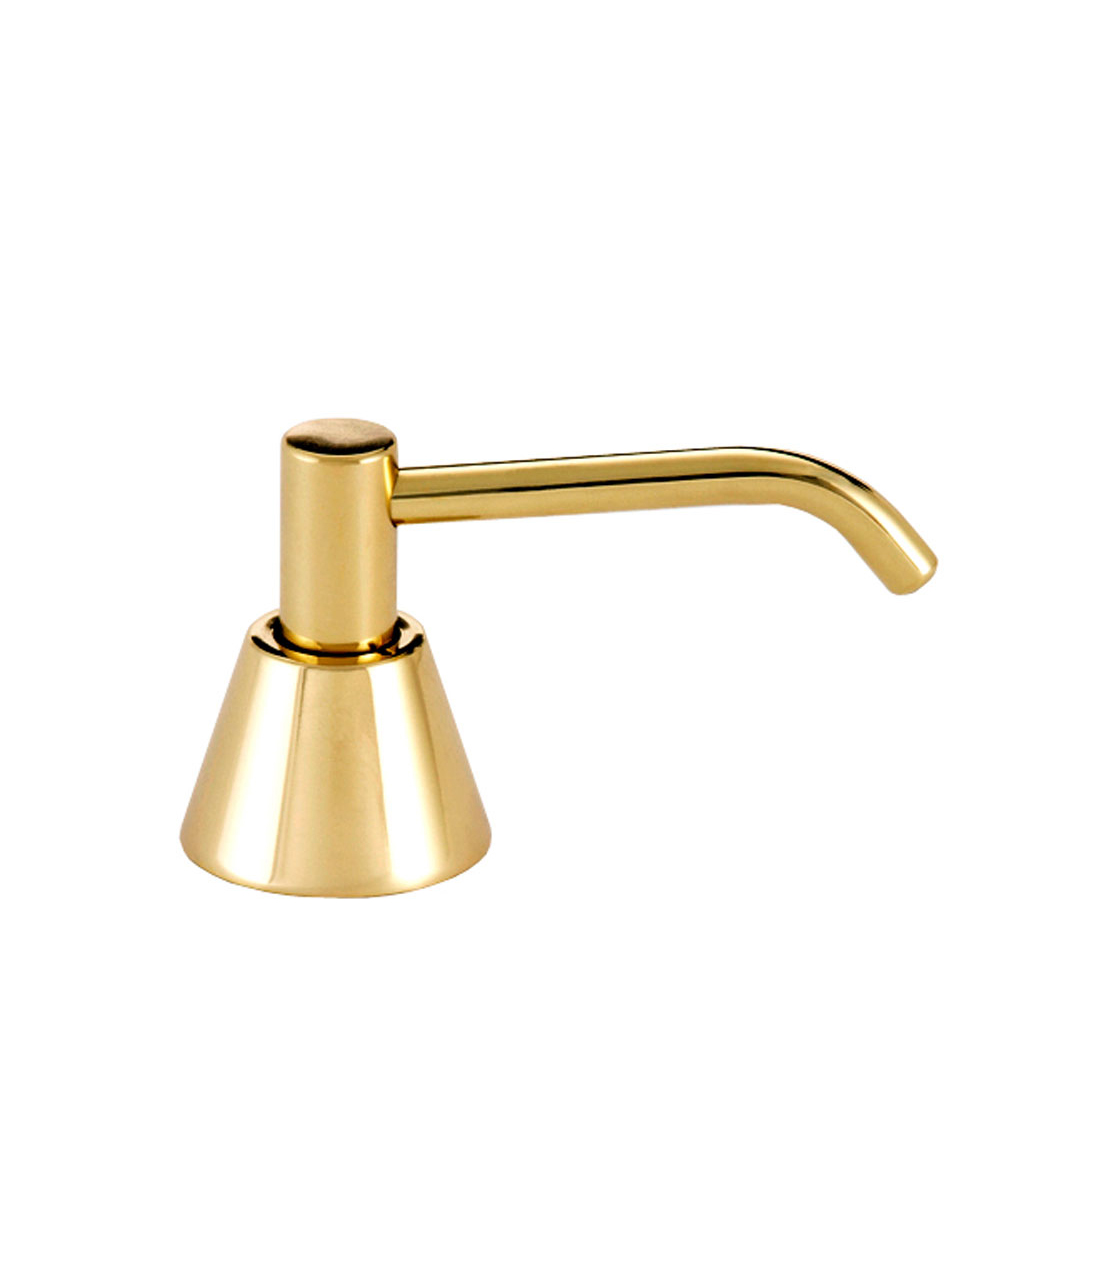 Basin-Mounted Polished Brass Soap Dispenser - (Model #: g-64lb-us-3) Image